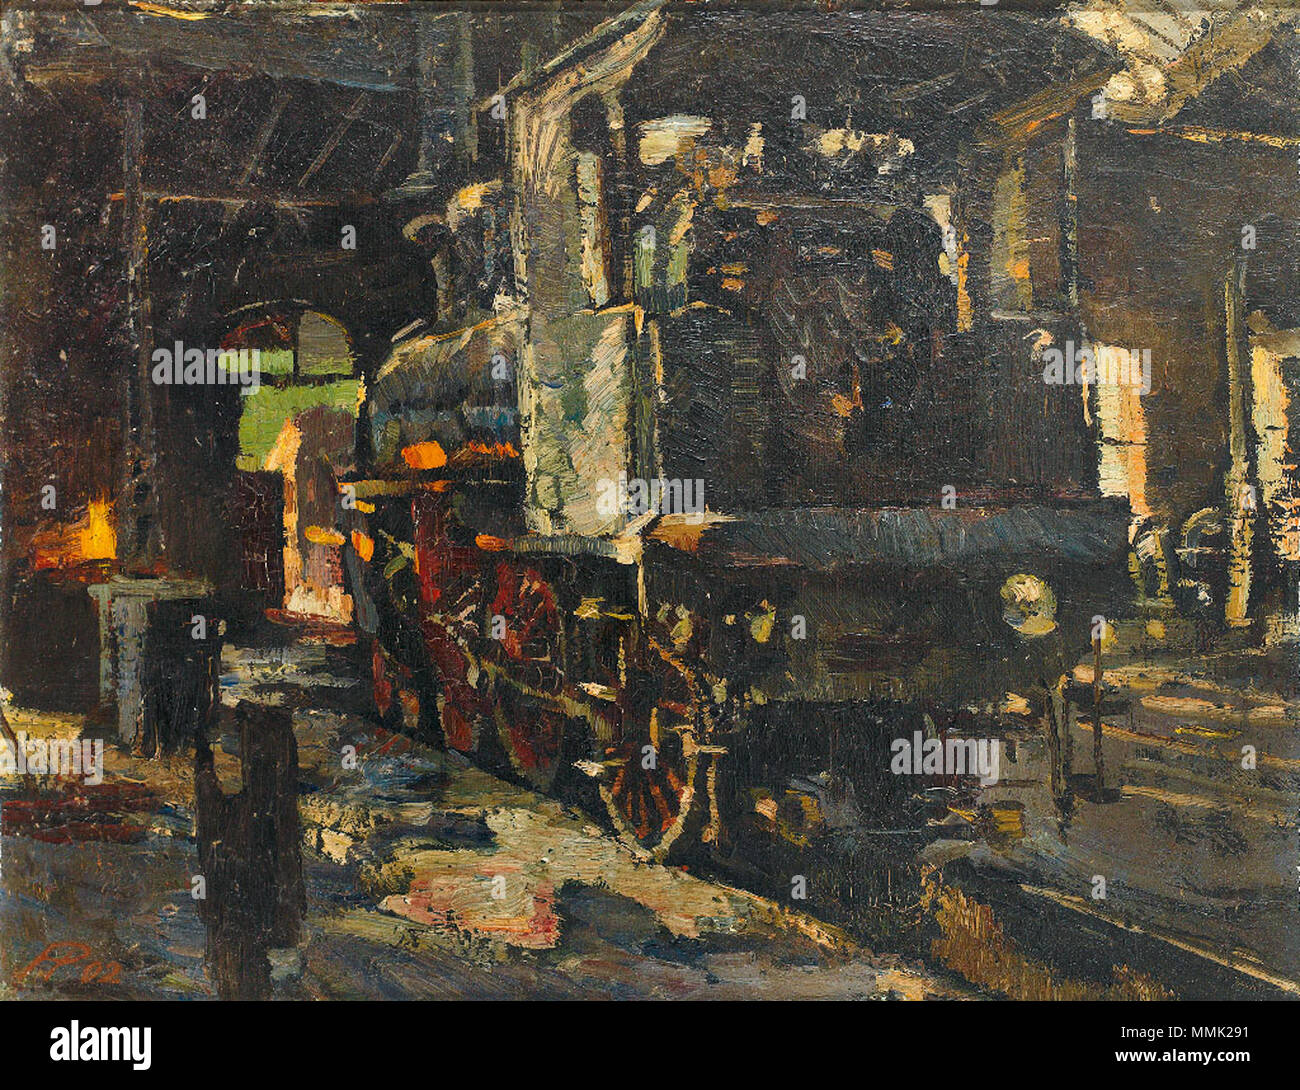 . Hermann Pleuer: Dampflokomotive in einem Bahnhof, 1902. Öl auf Karton, 41,5 x 53,5 cm  . 1902. Hermann Pleuer Dampflokomotive 1902 Stock Photo